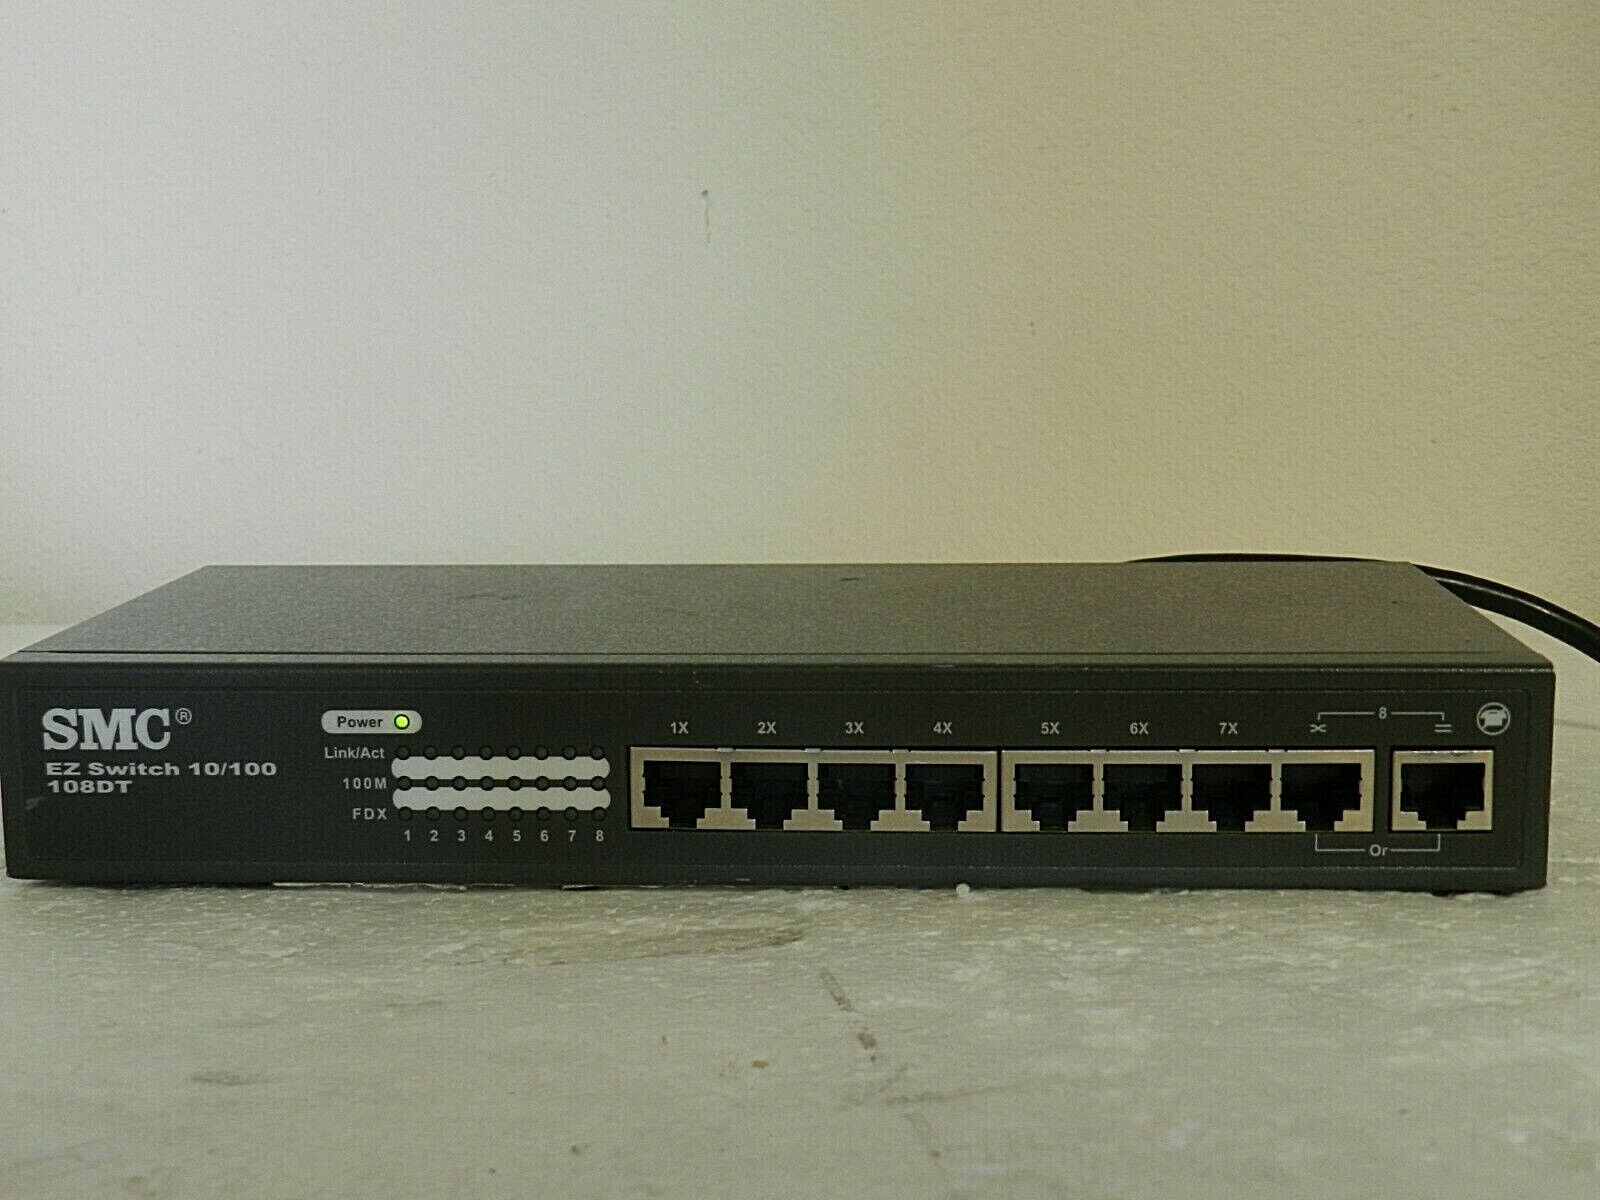 SMC EZ Switch 10/100 8-Port Ethernet Network Switch 108DT EZNET-8SW